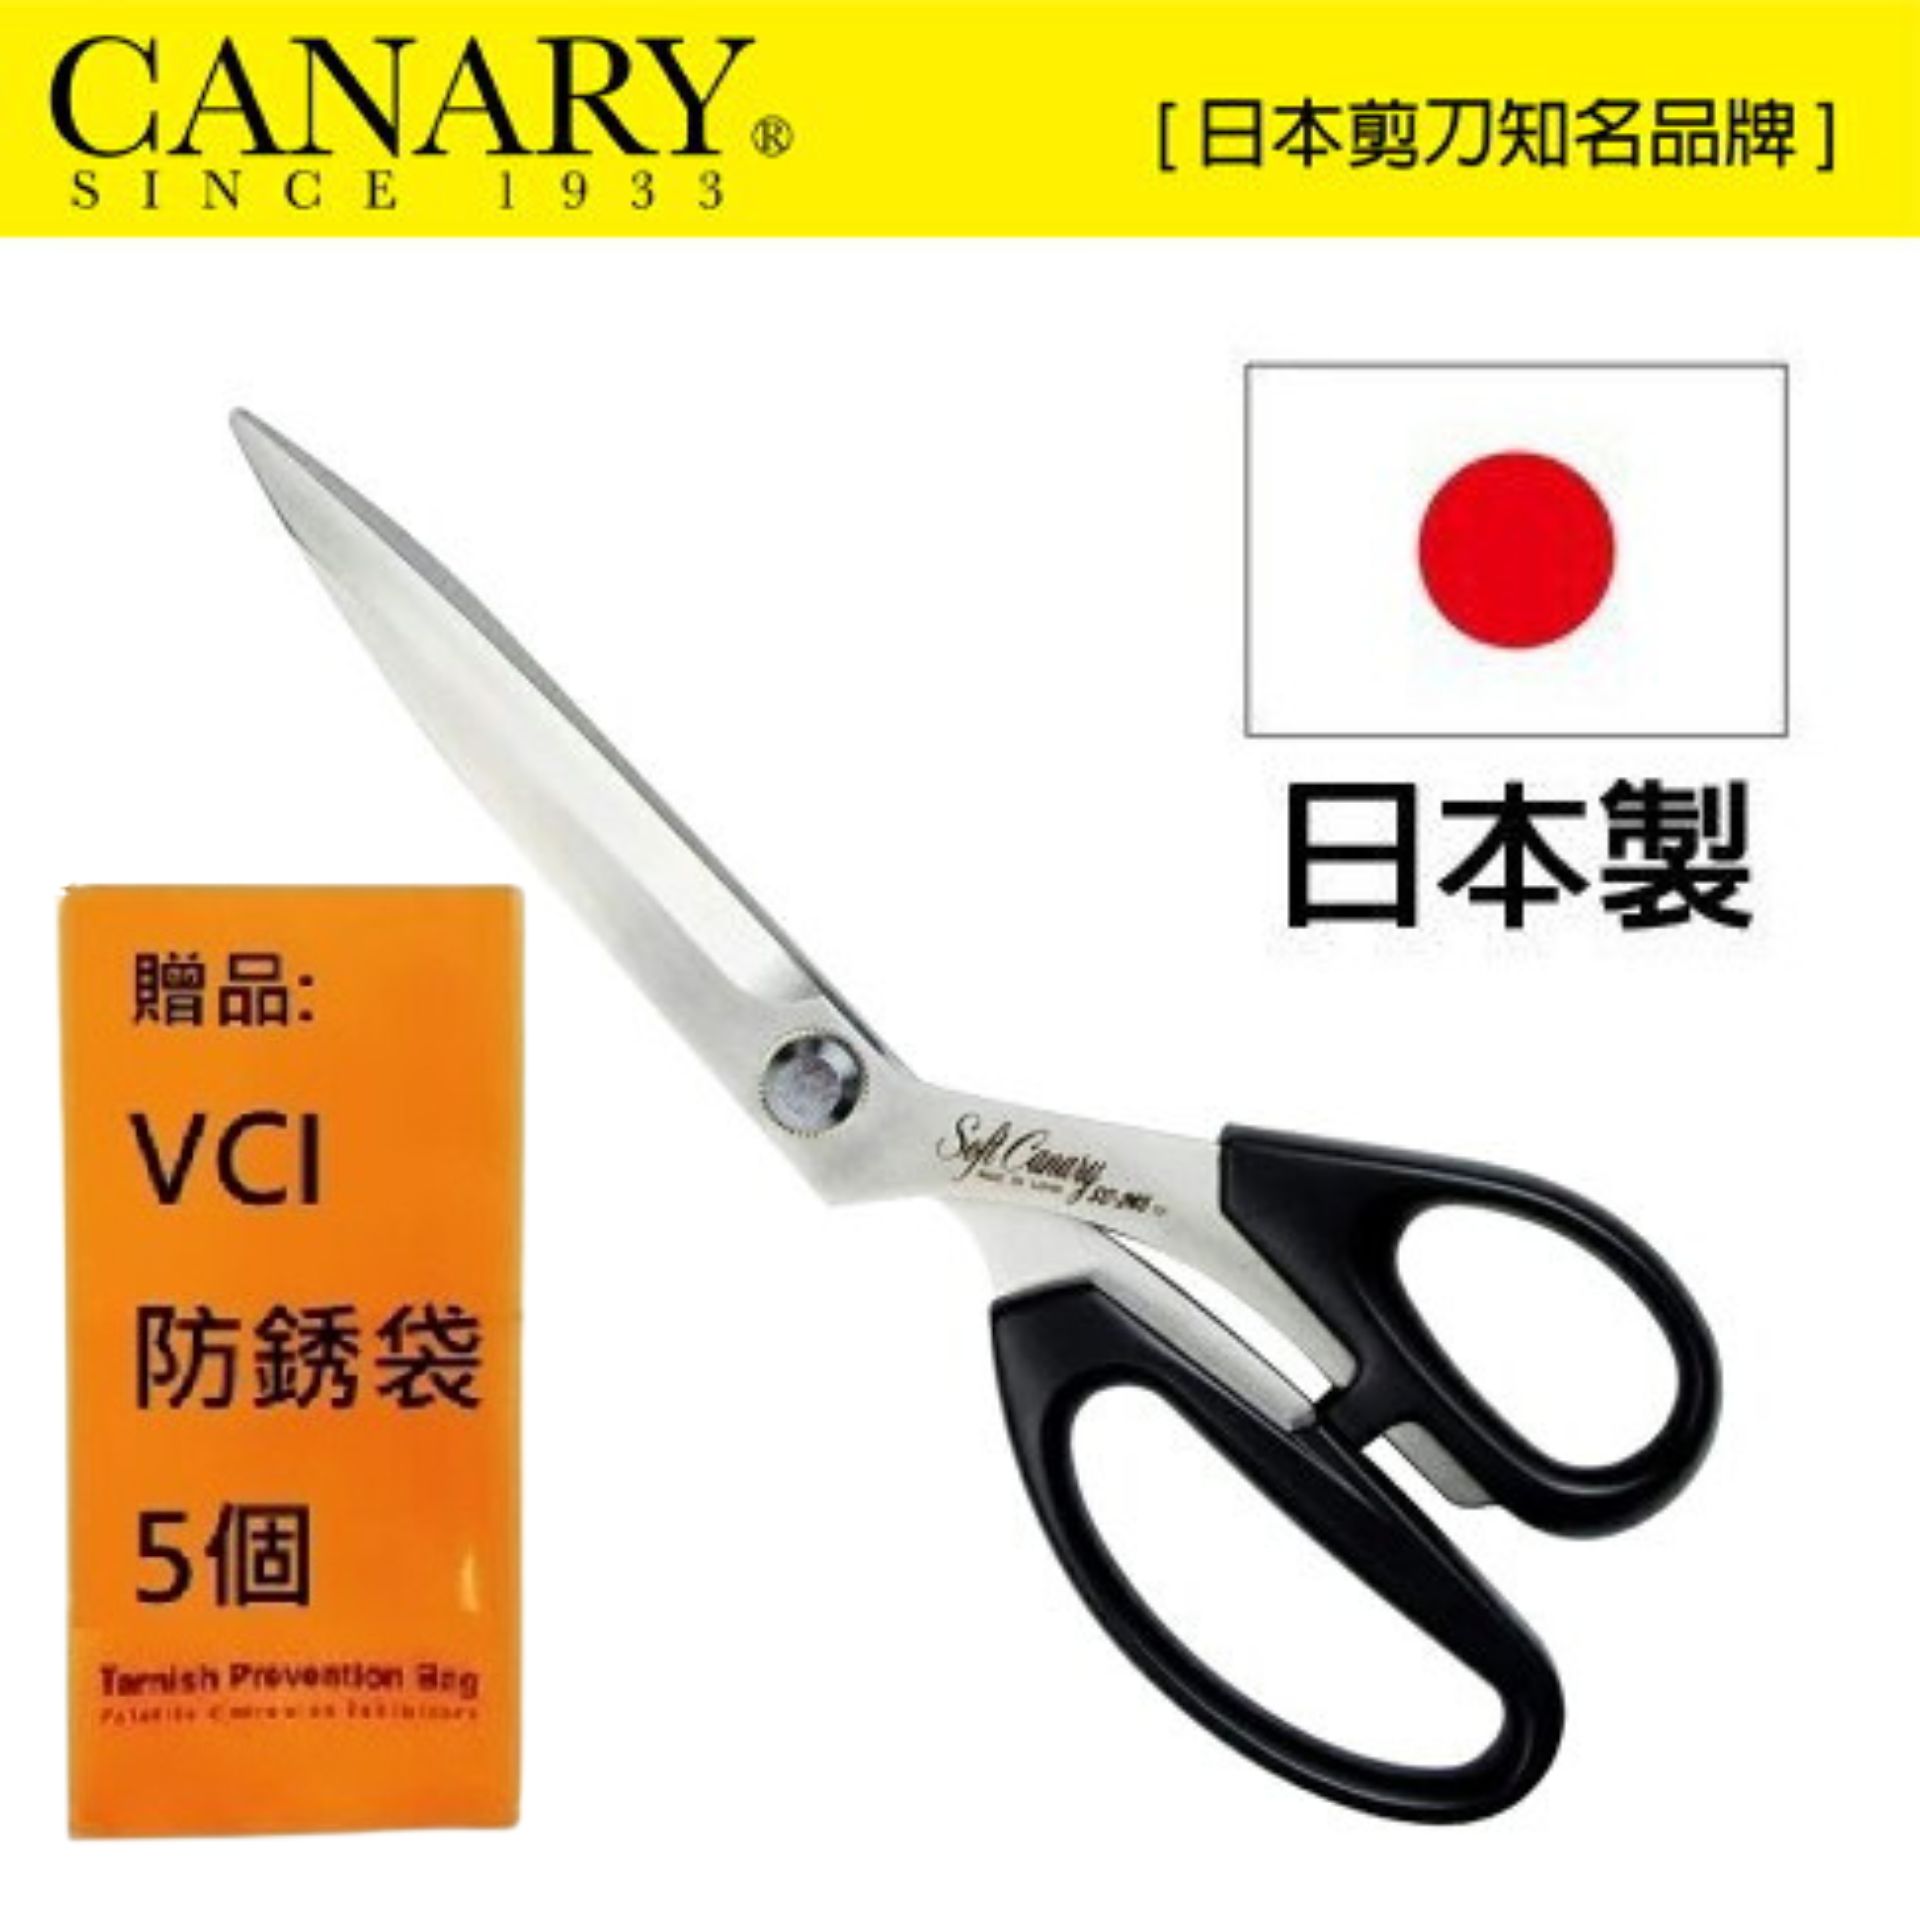 【日本CANARY】職業級洋裁高級剪刀PRO 245mm SC-245 高鋒利度及高耐用性